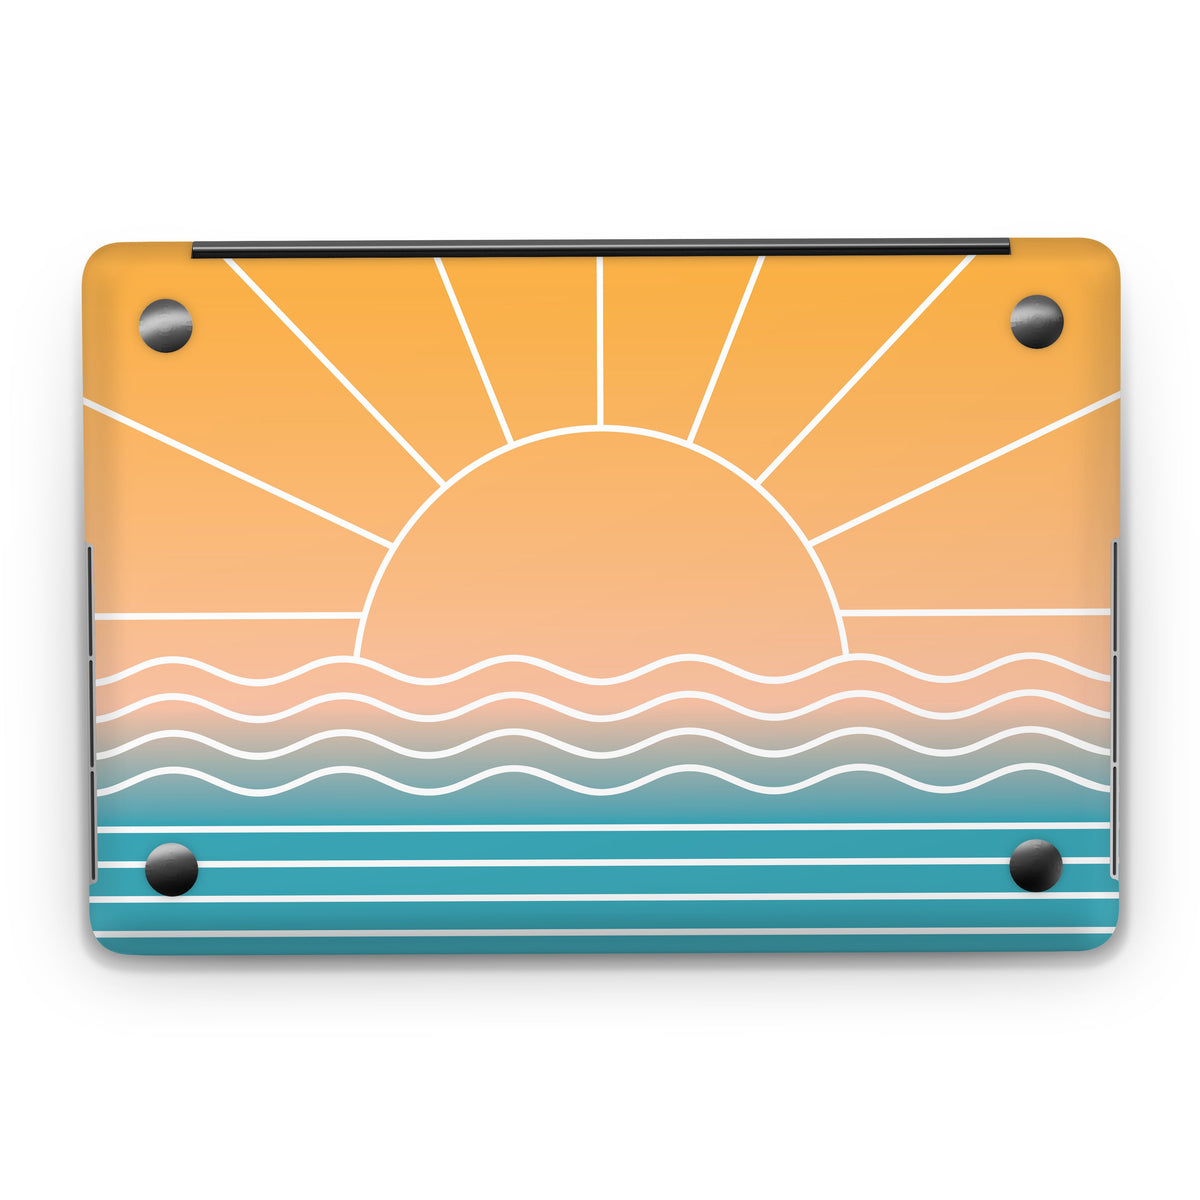 Rays (MacBook Skin)